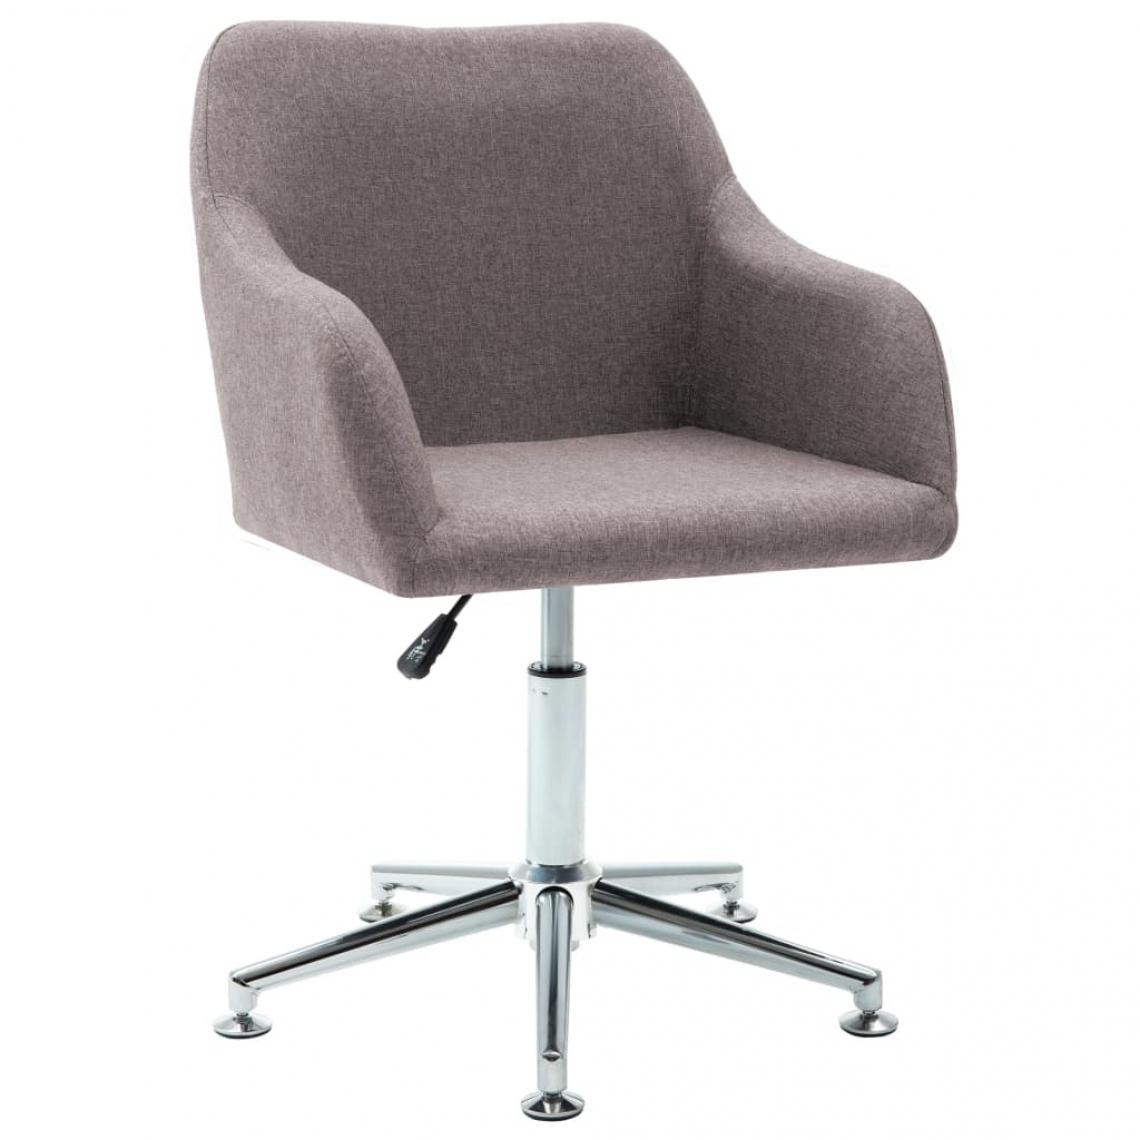 Decoshop26 - Chaise pivotante de salle à manger design contemporain tissu taupe CDS020102 - Chaises